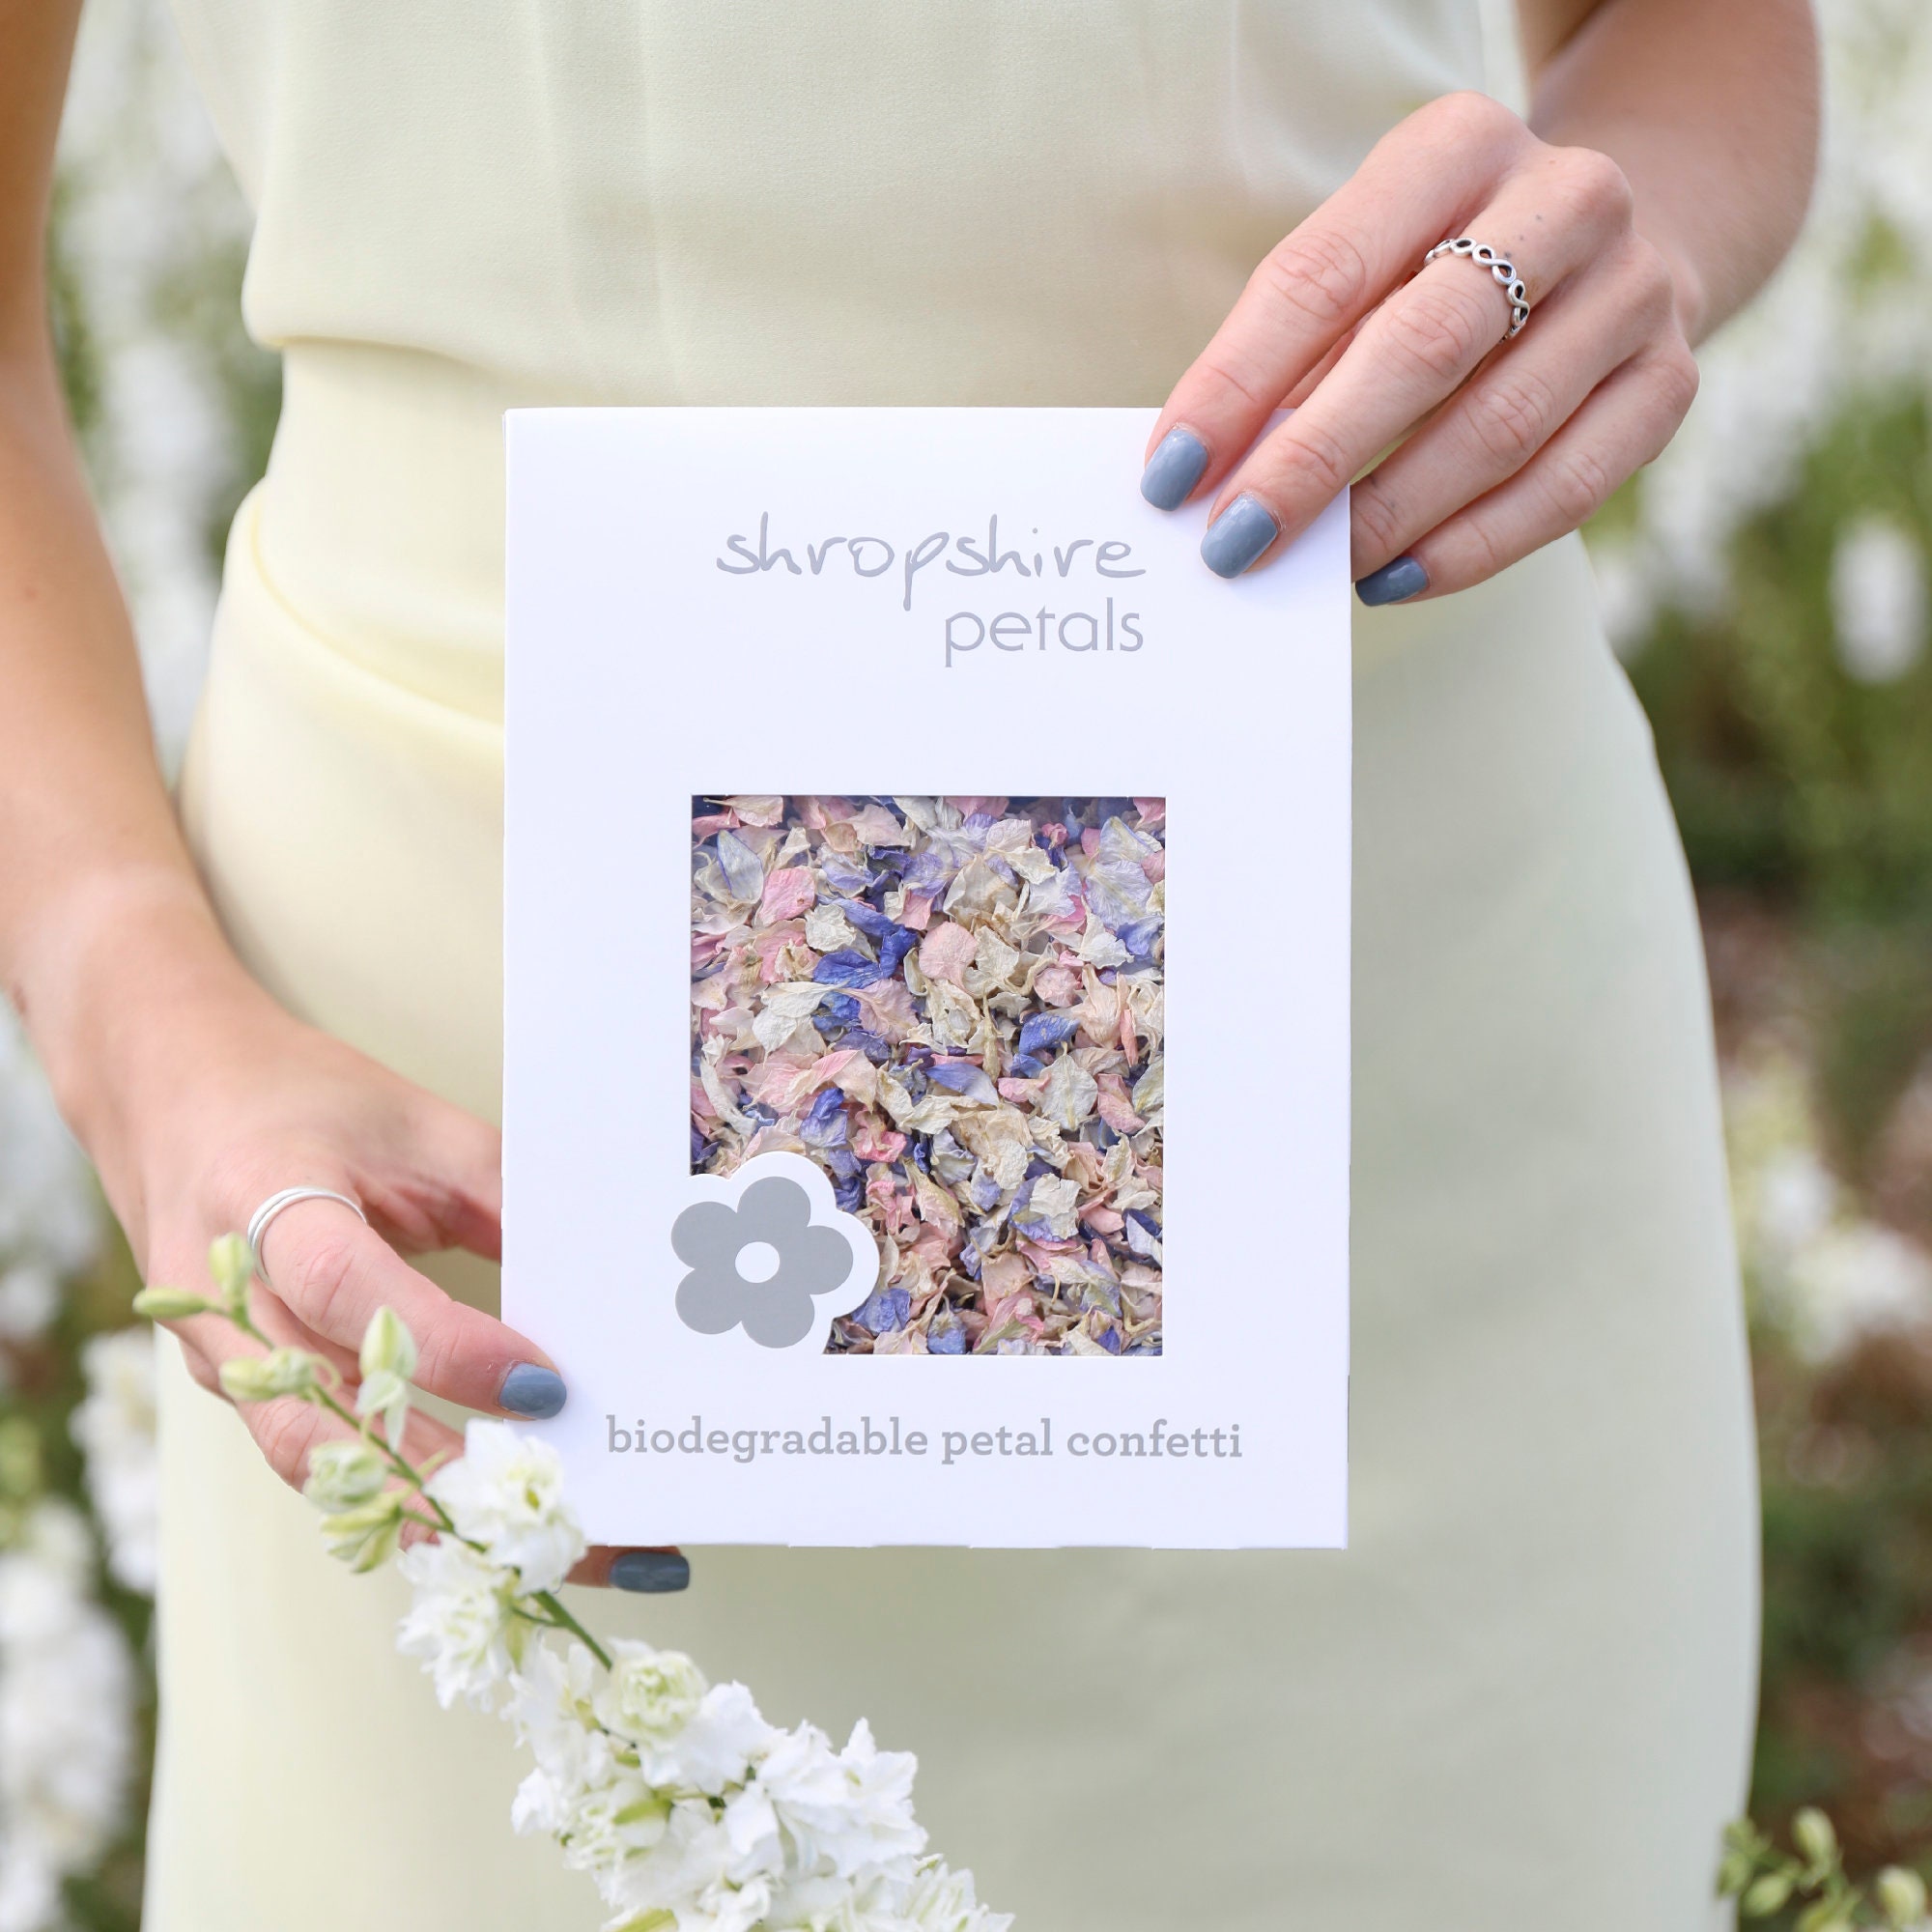 Shropshire Petals Confetti Biodegradable Wedding Confetti, Eco-friendly Flower  Petal Confetti